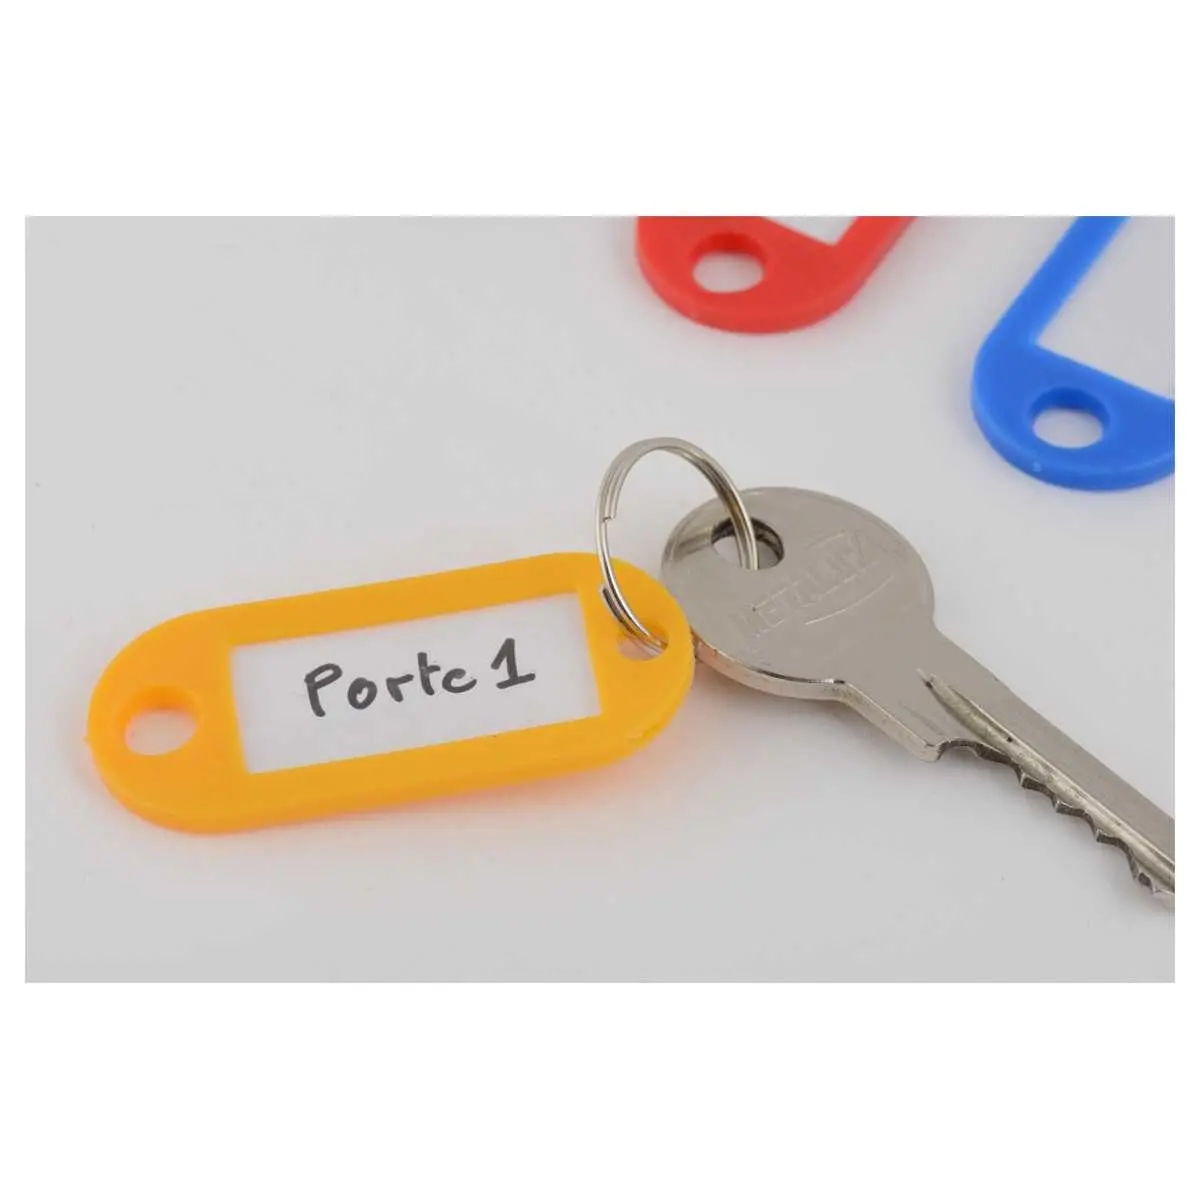 Étiquettes de porte-clés en plastique coloré assorties avec un